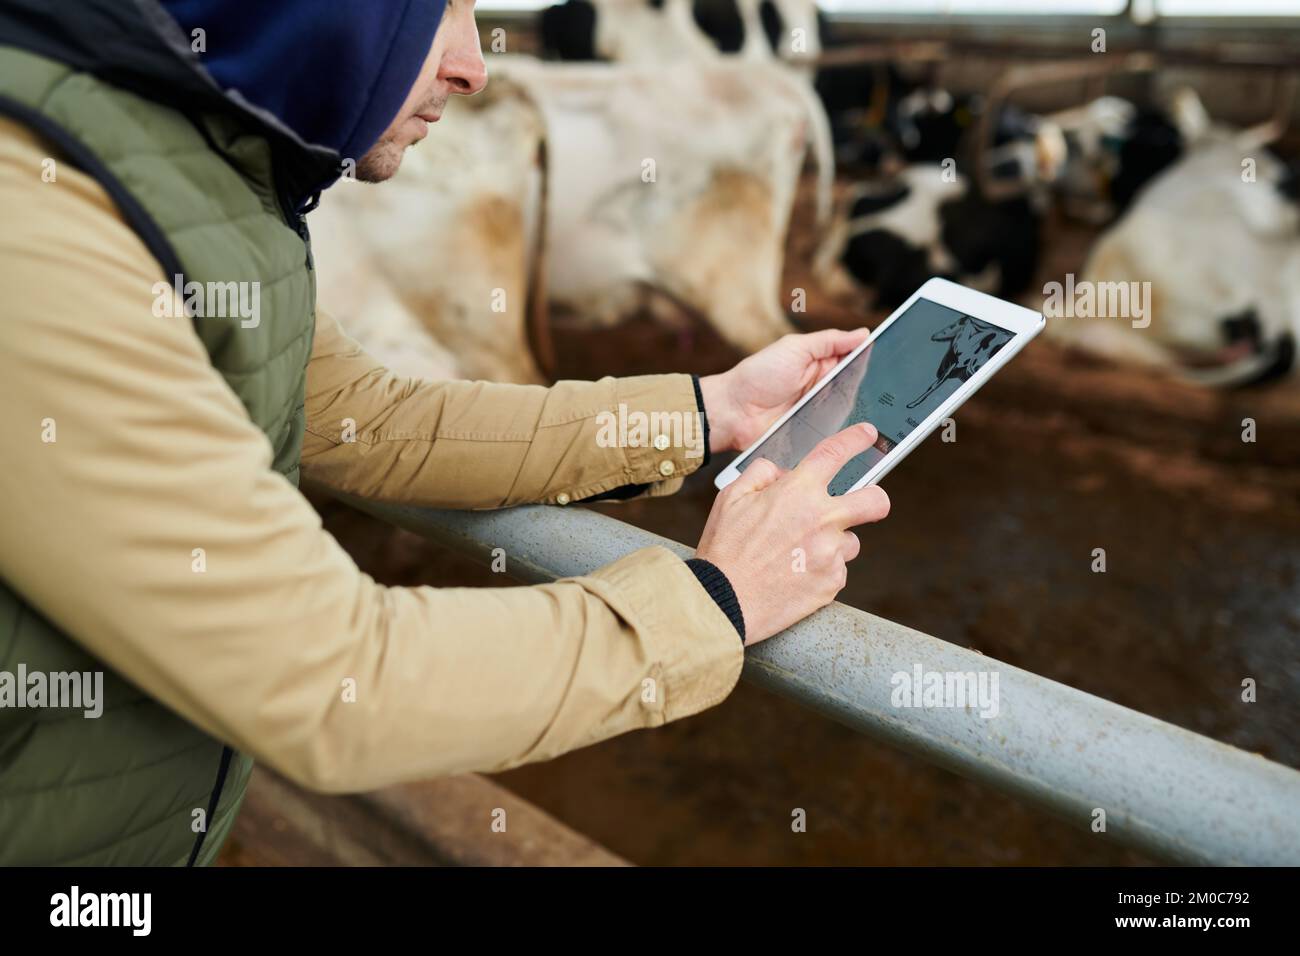 Primer plano de un joven trabajador de cowfarm con una tableta desplazándose a través de instrucciones en línea o recomendaciones sobre el cuidado del ganado Foto de stock